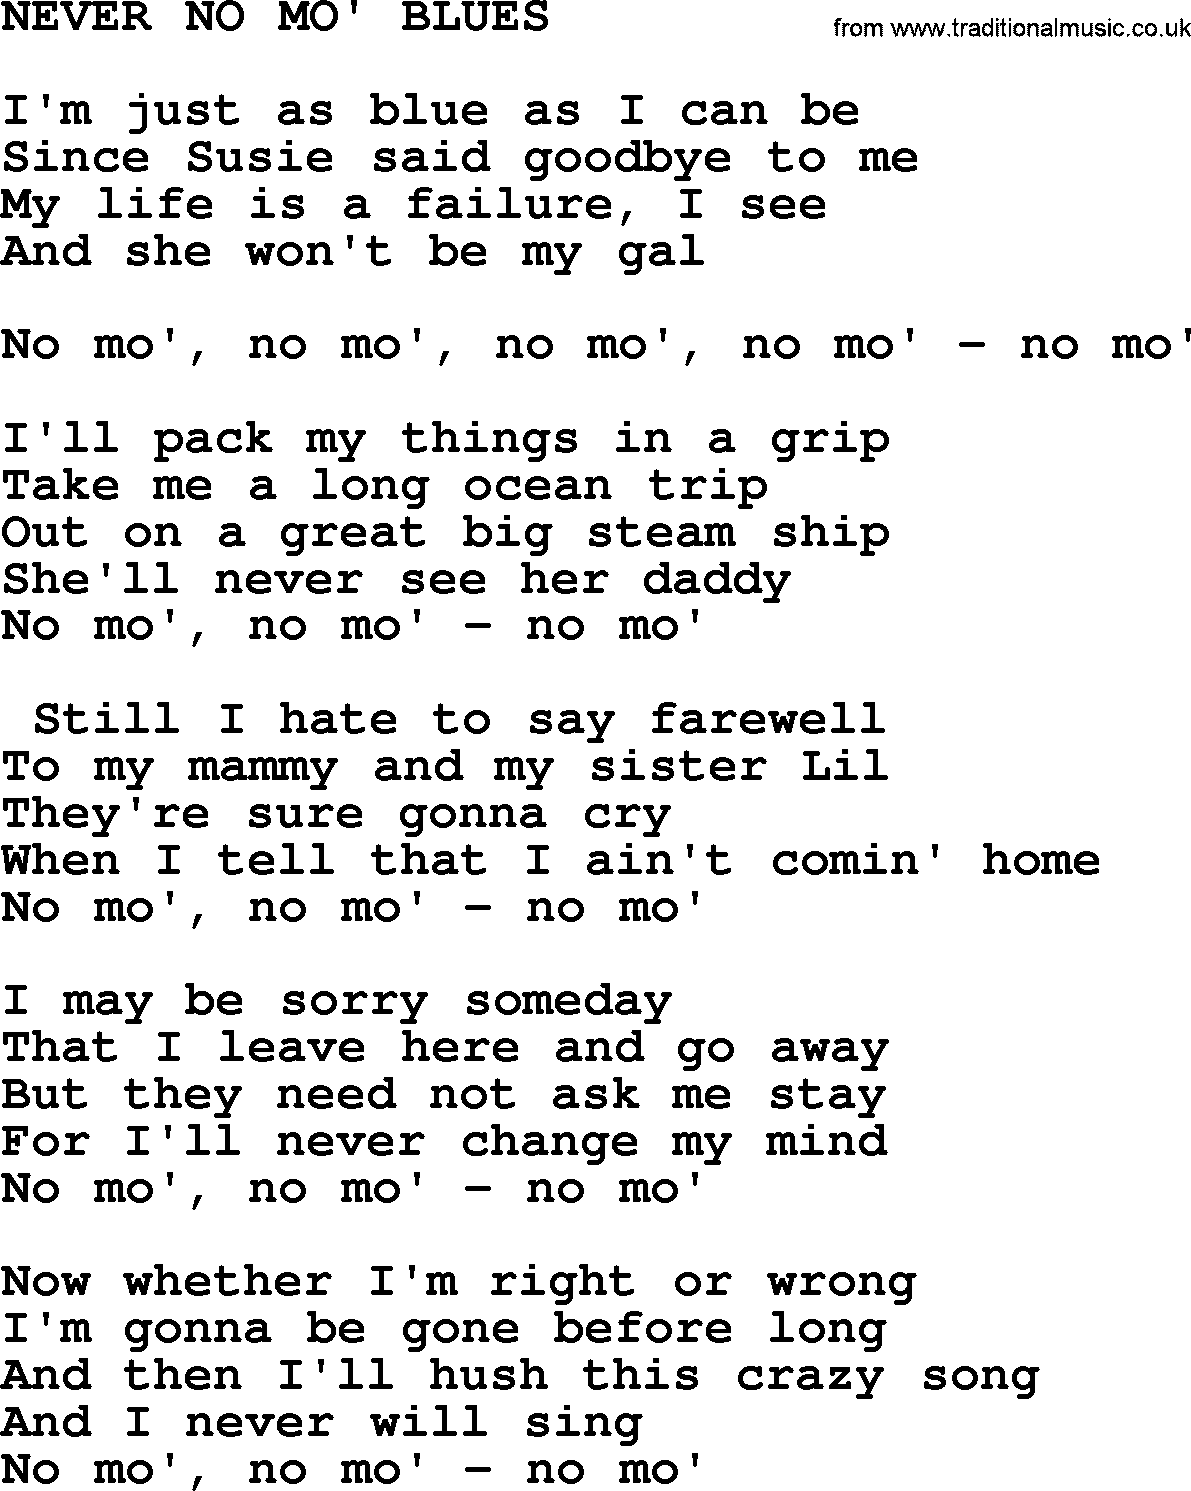 Merle Haggard song: Never No Mo' Blues, lyrics.